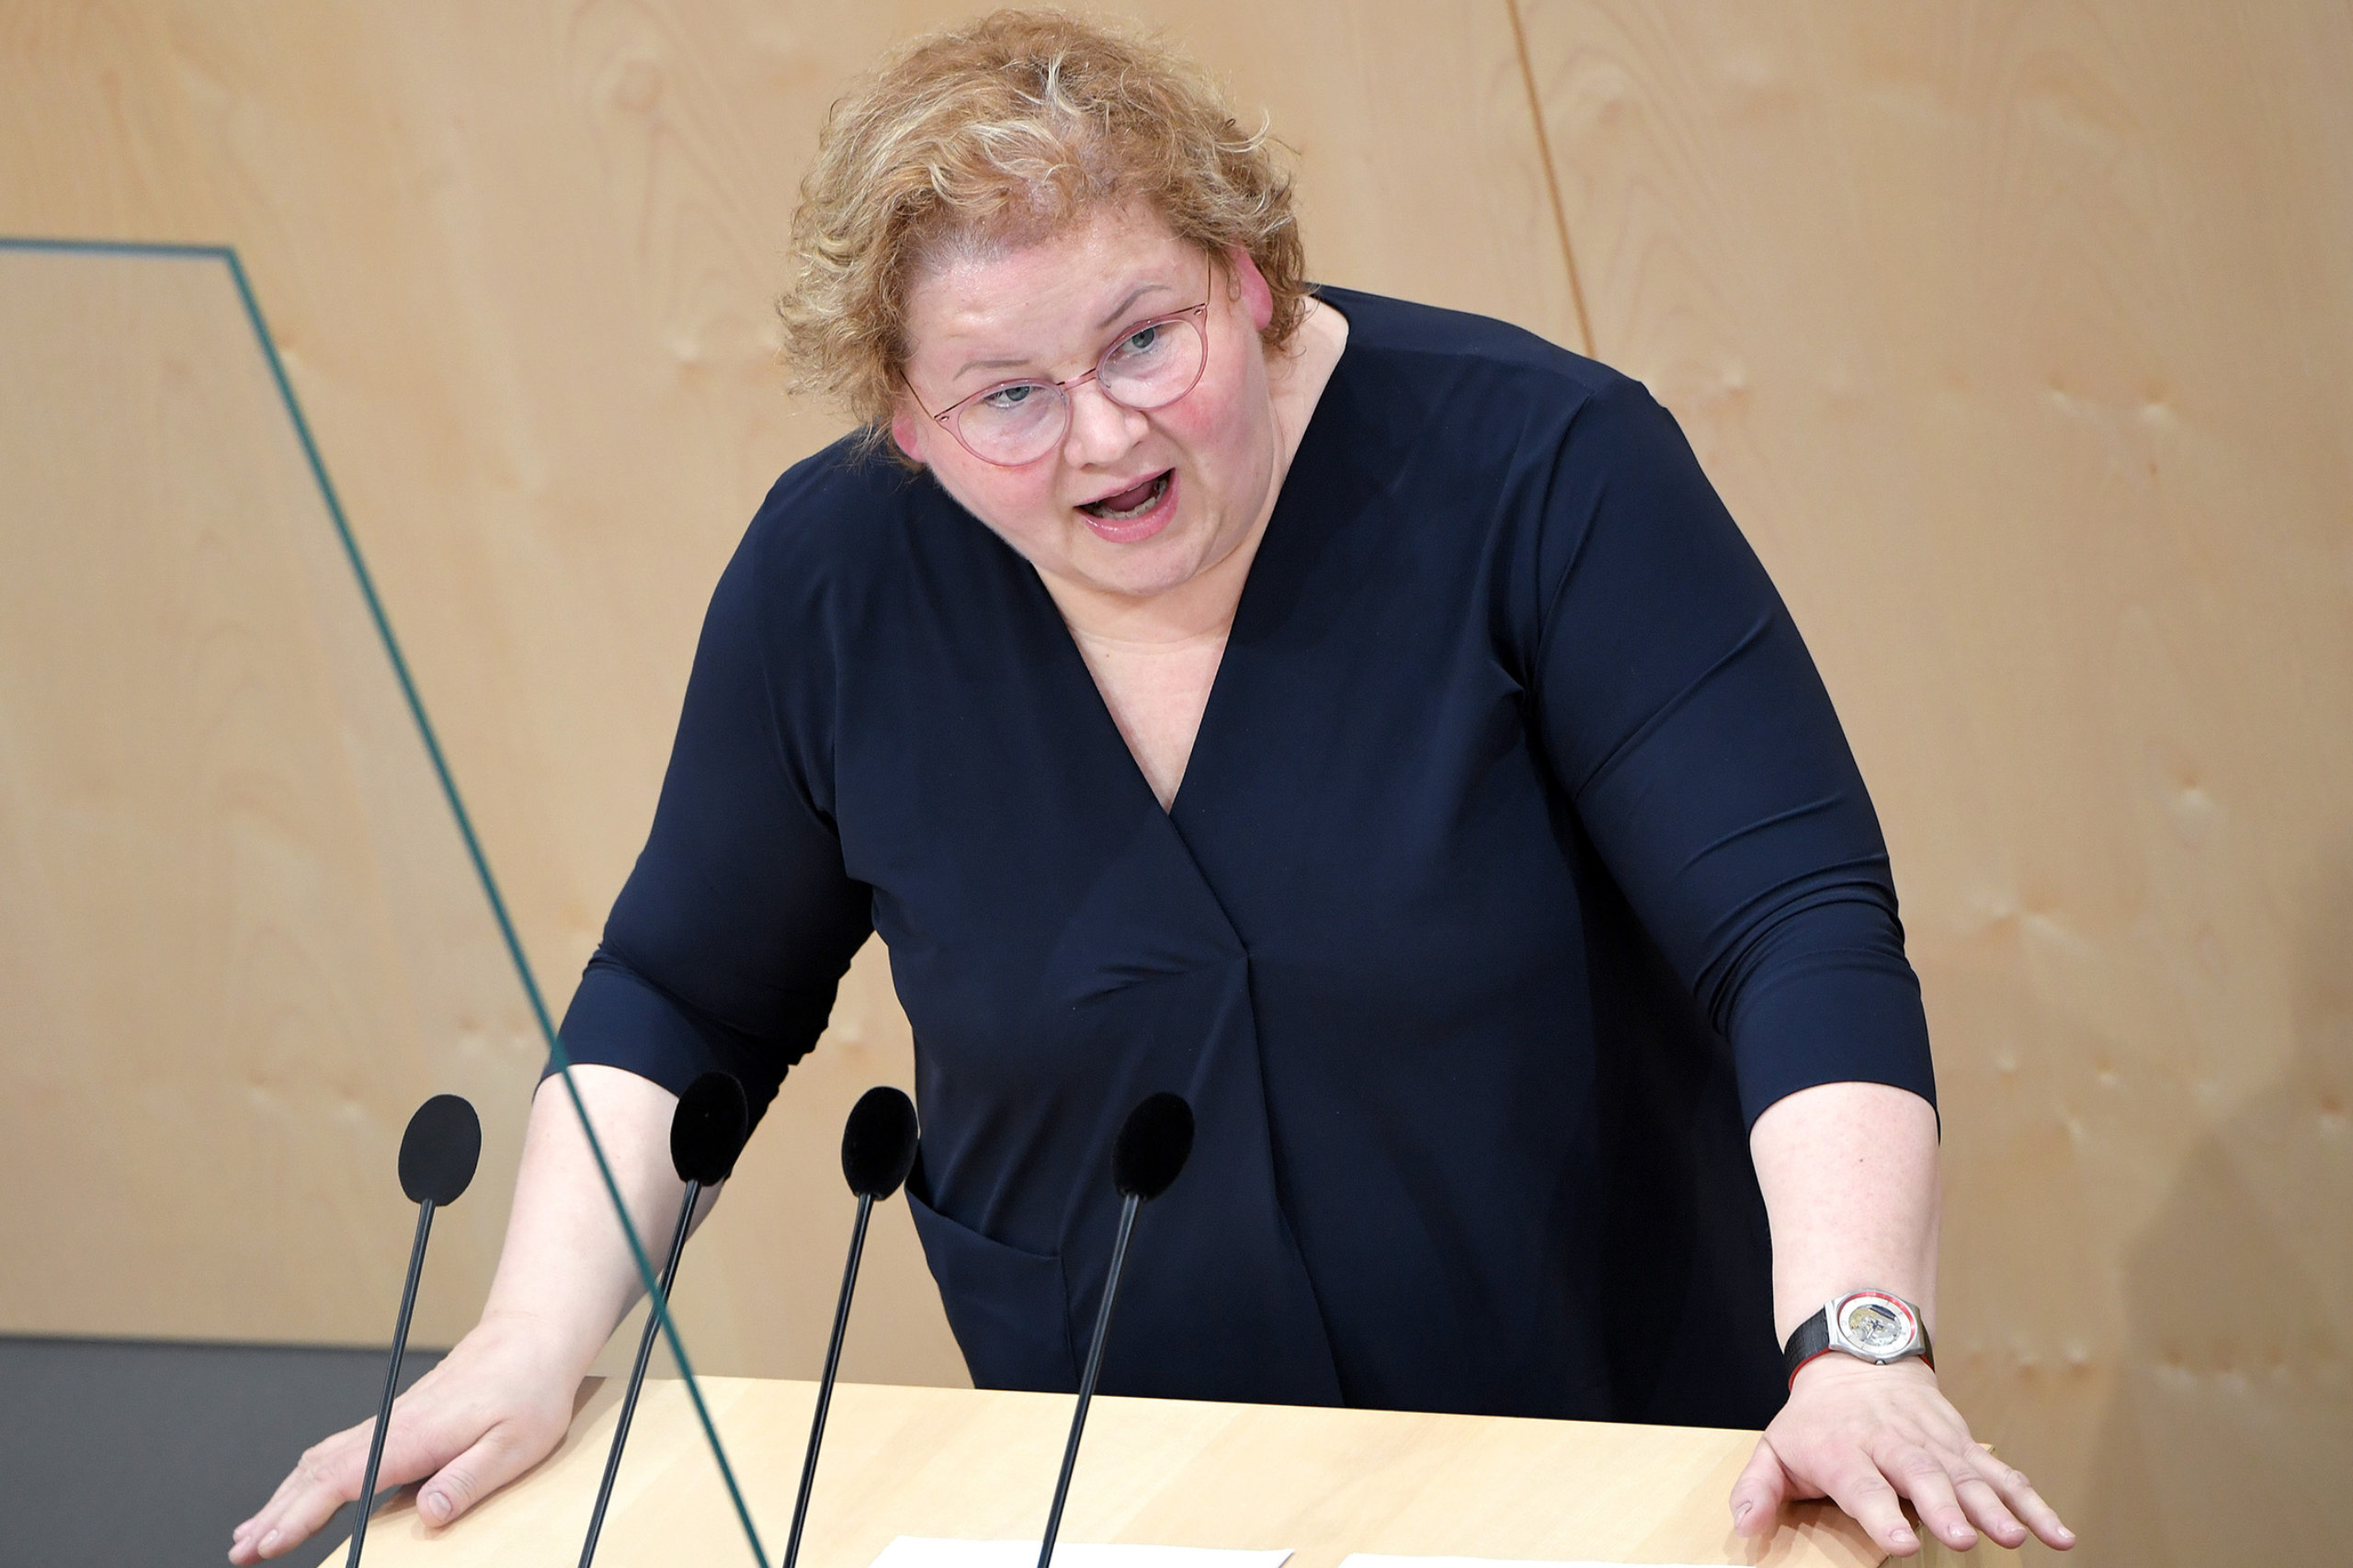 Korinna Schumann ist ÖGB Vizepräsidentin und Abgeordnete. Sie fordert den Ausbau der Elementarpädagogik.